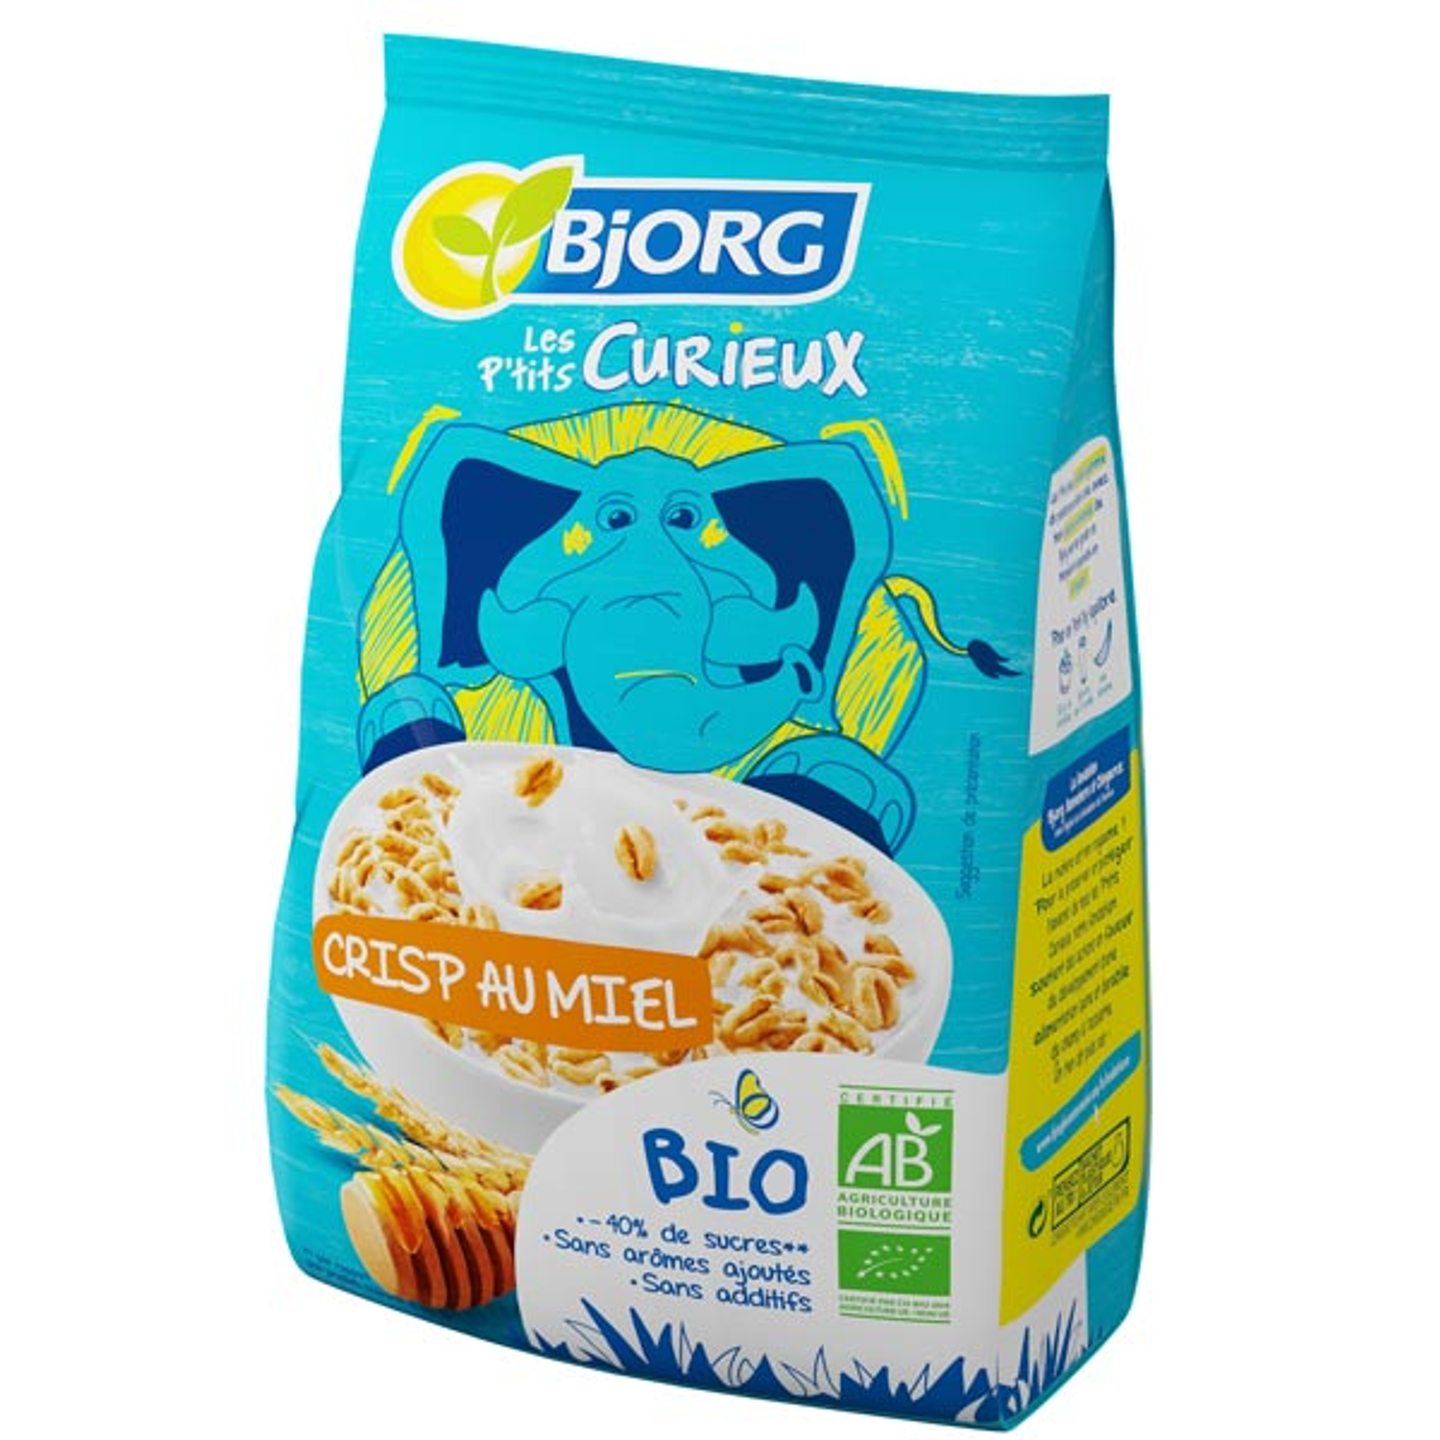 Muesli protéines sans sucres ajoutés BIO, Bjorg (375 g)